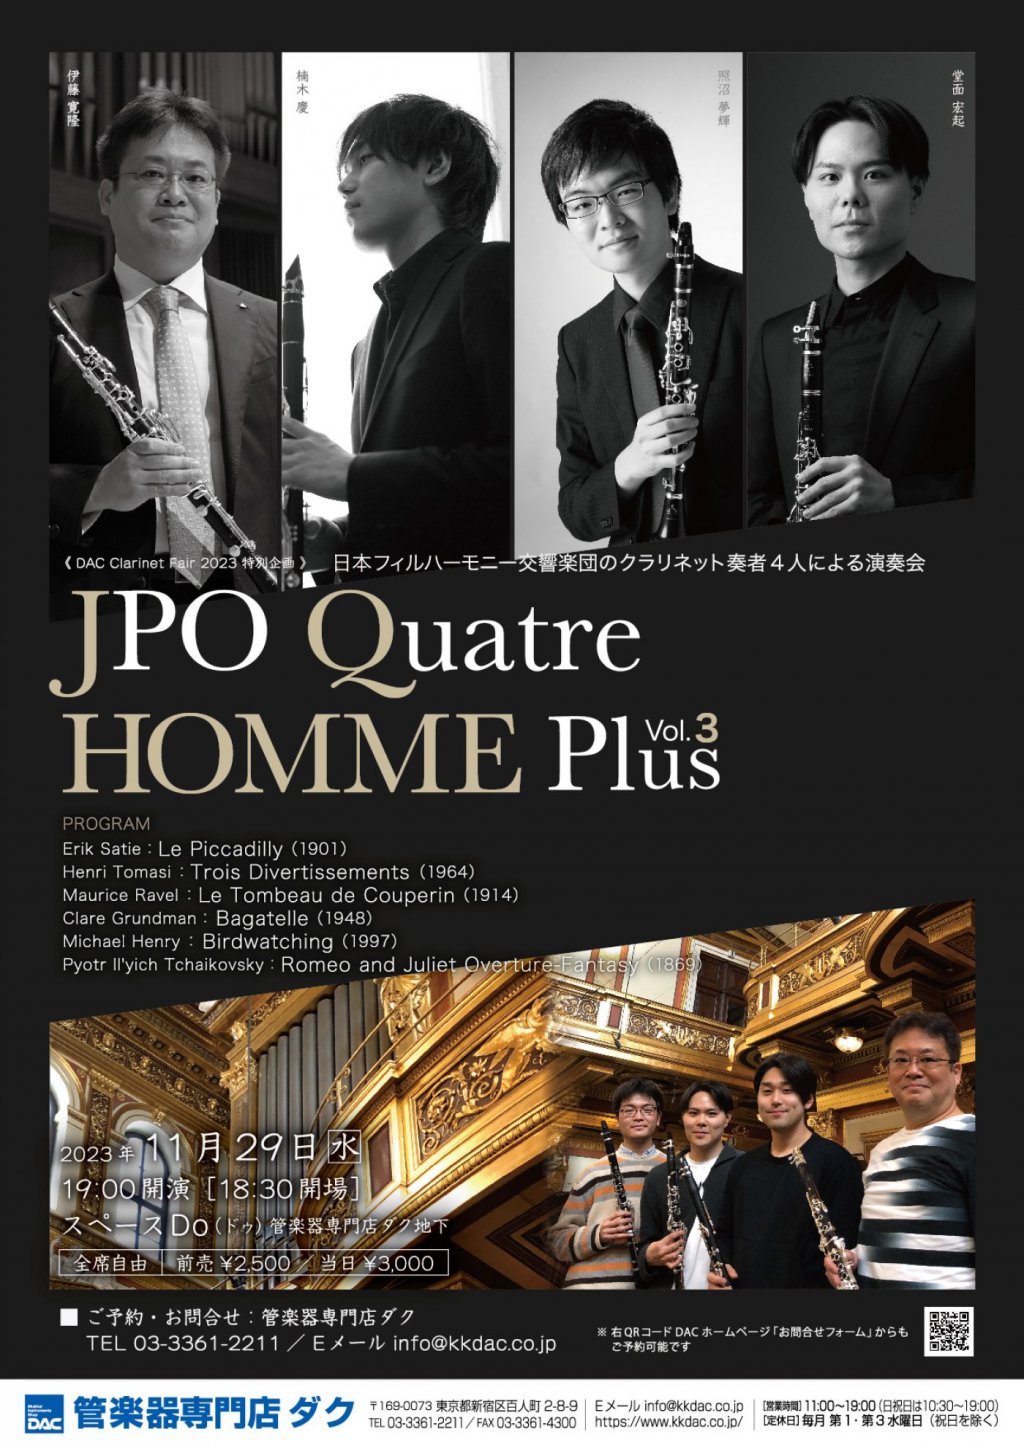 チケットが完売いたしました《 DAC Clarinet Fair 2023 特別企画 》日本フィルハーモニー交響楽団のクラリネット奏者4人による演奏会　JPO Quatre  HOMME Plus Vol.3